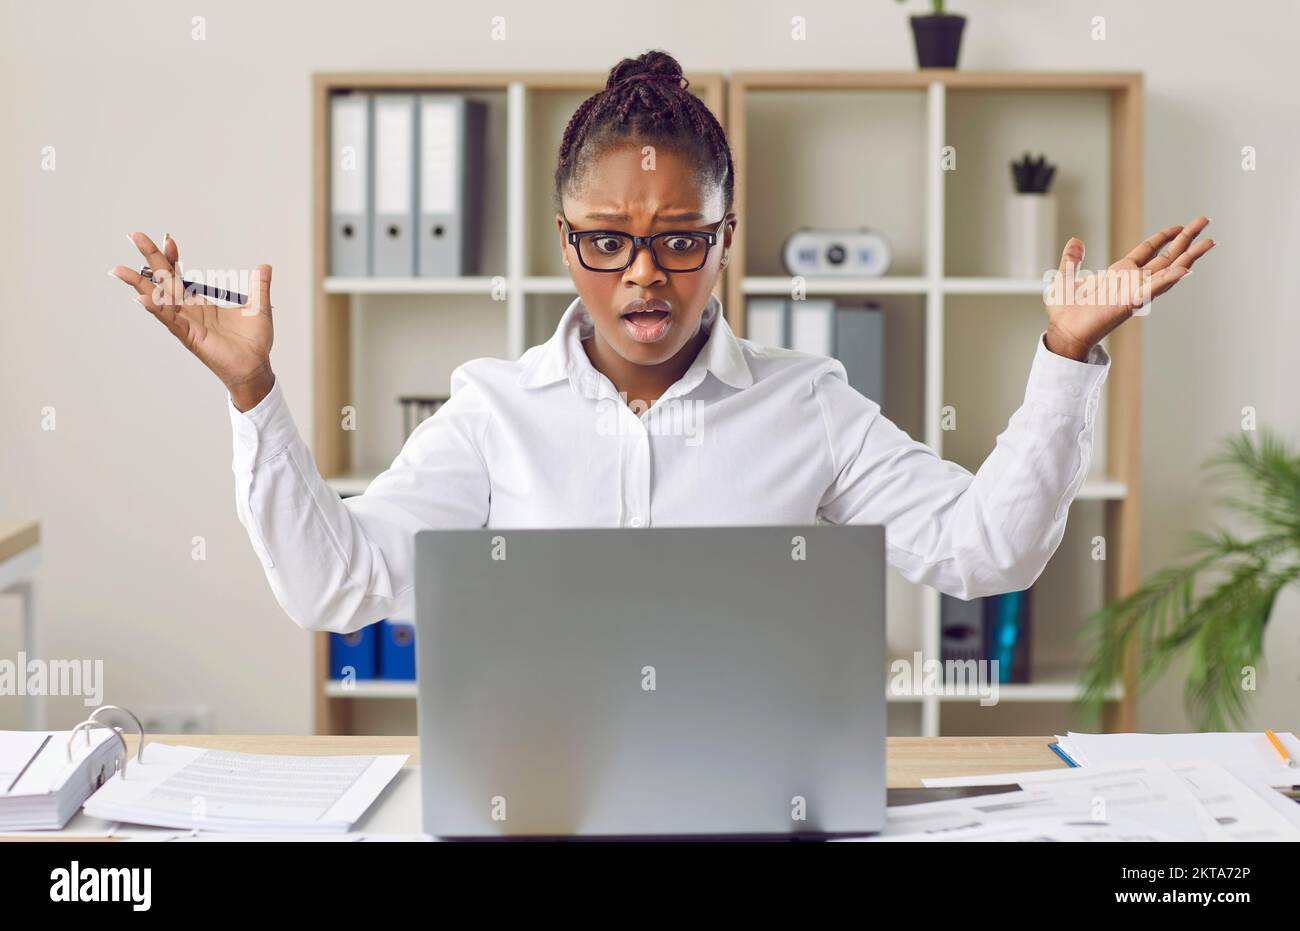 Frau, die bei der Arbeit im Büro ein Problem aufgrund eines Fehlers oder Fehlers auf ihrem Laptop hat Stockfoto